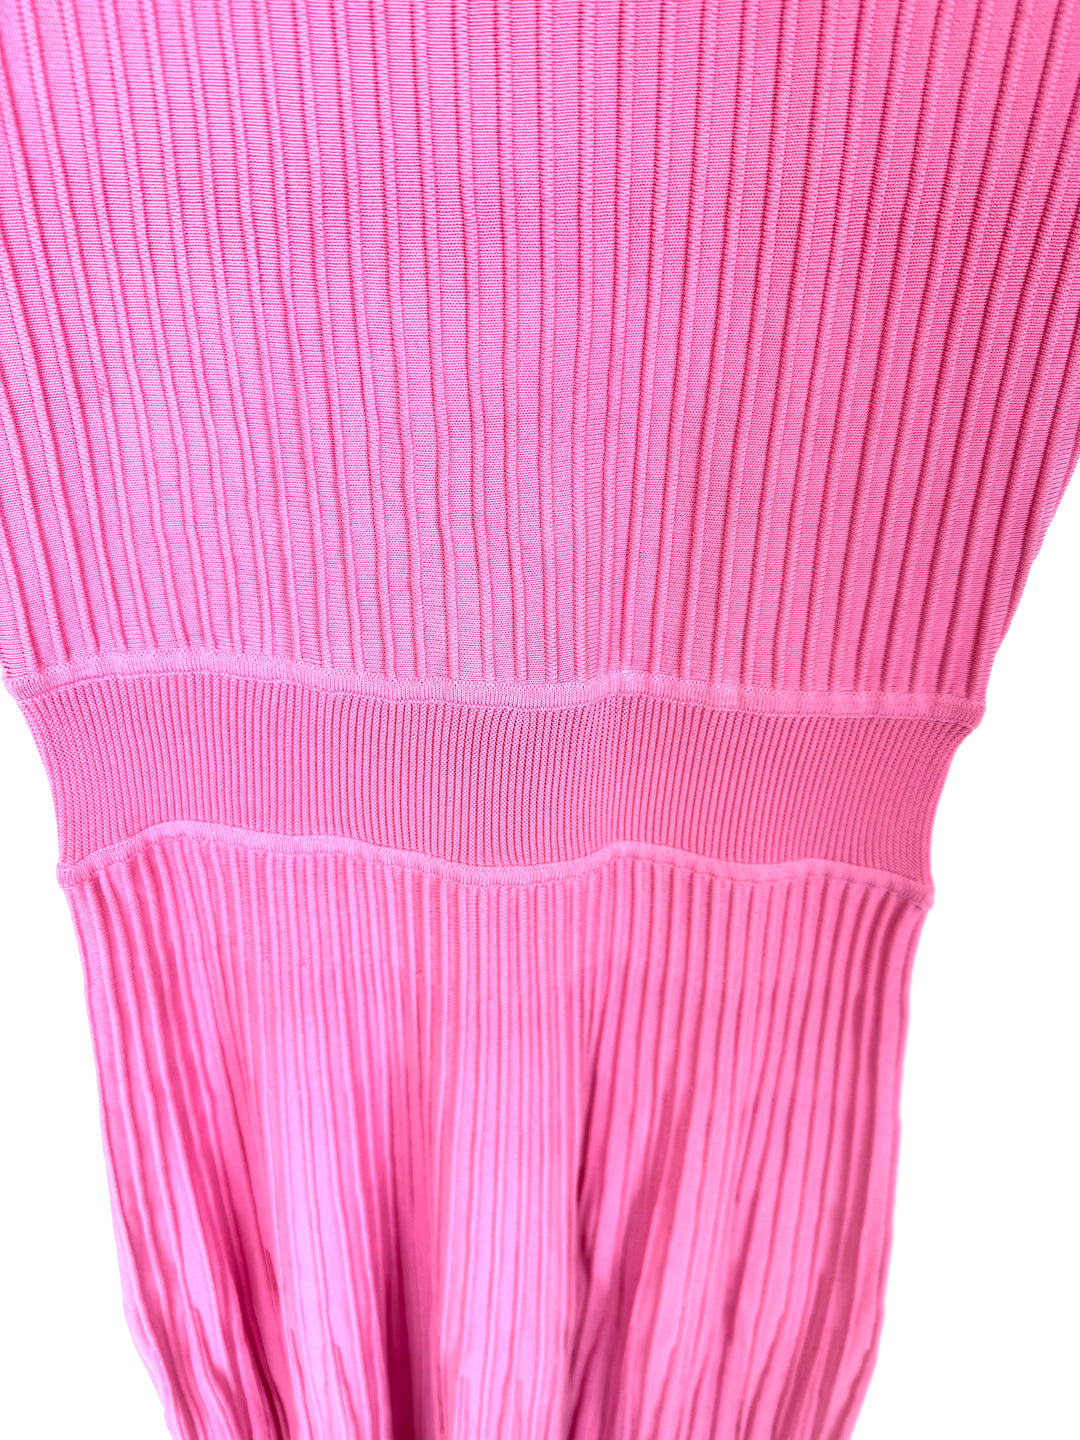 Light Pink Knit Dress - Size 2